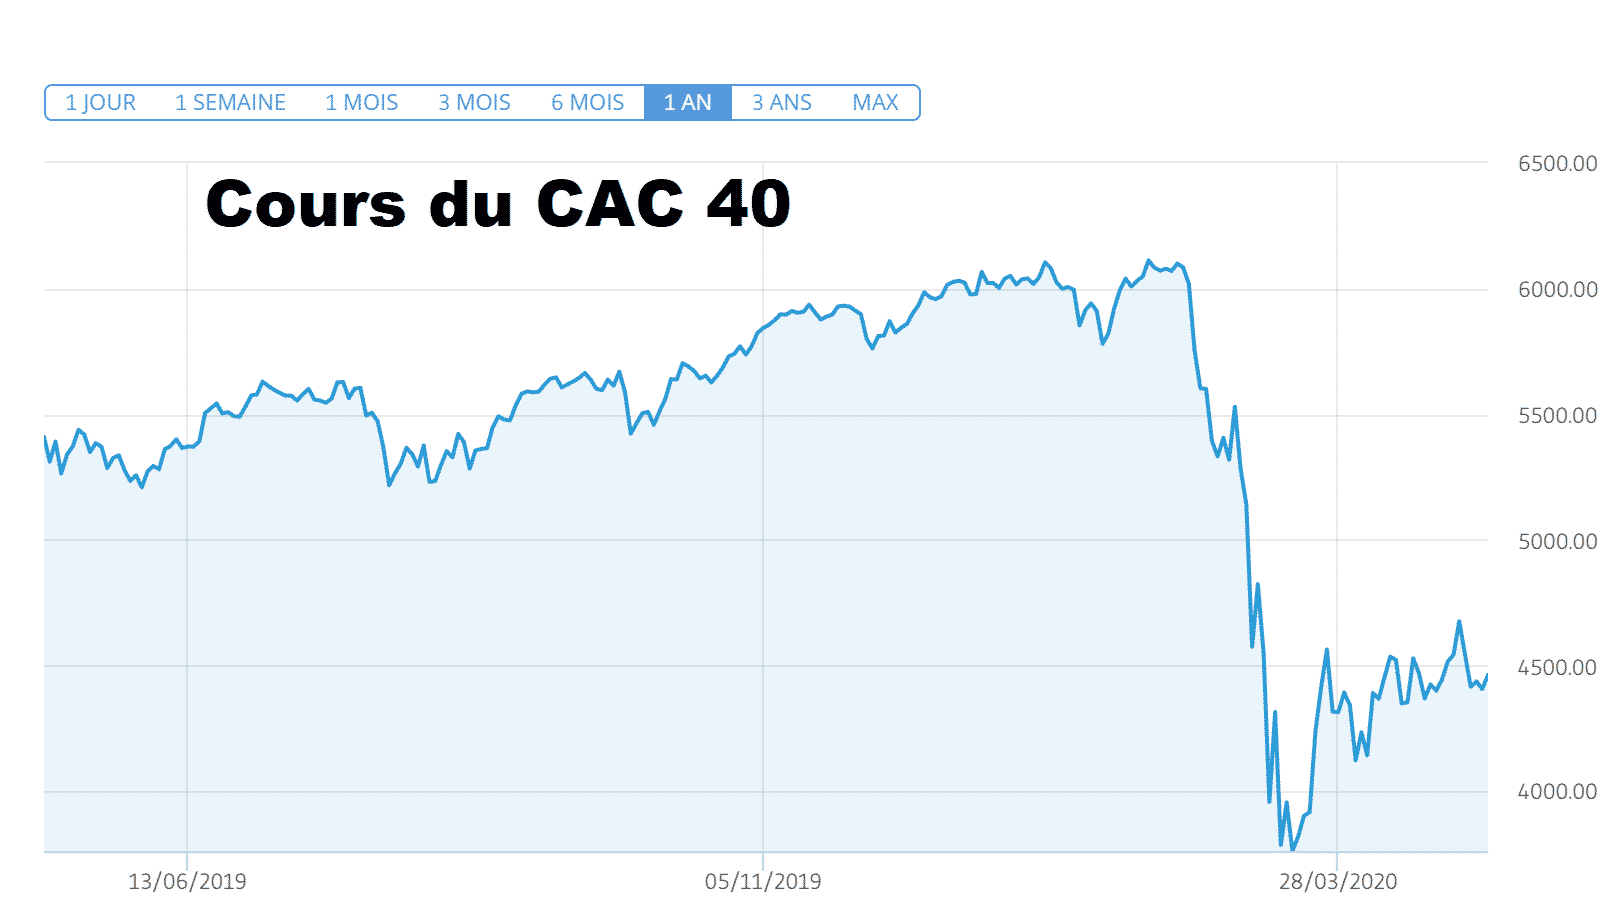 cours CAC 40 remonte lentement pente covid-19 cours CAC 40 baisse Covid-19 remonte